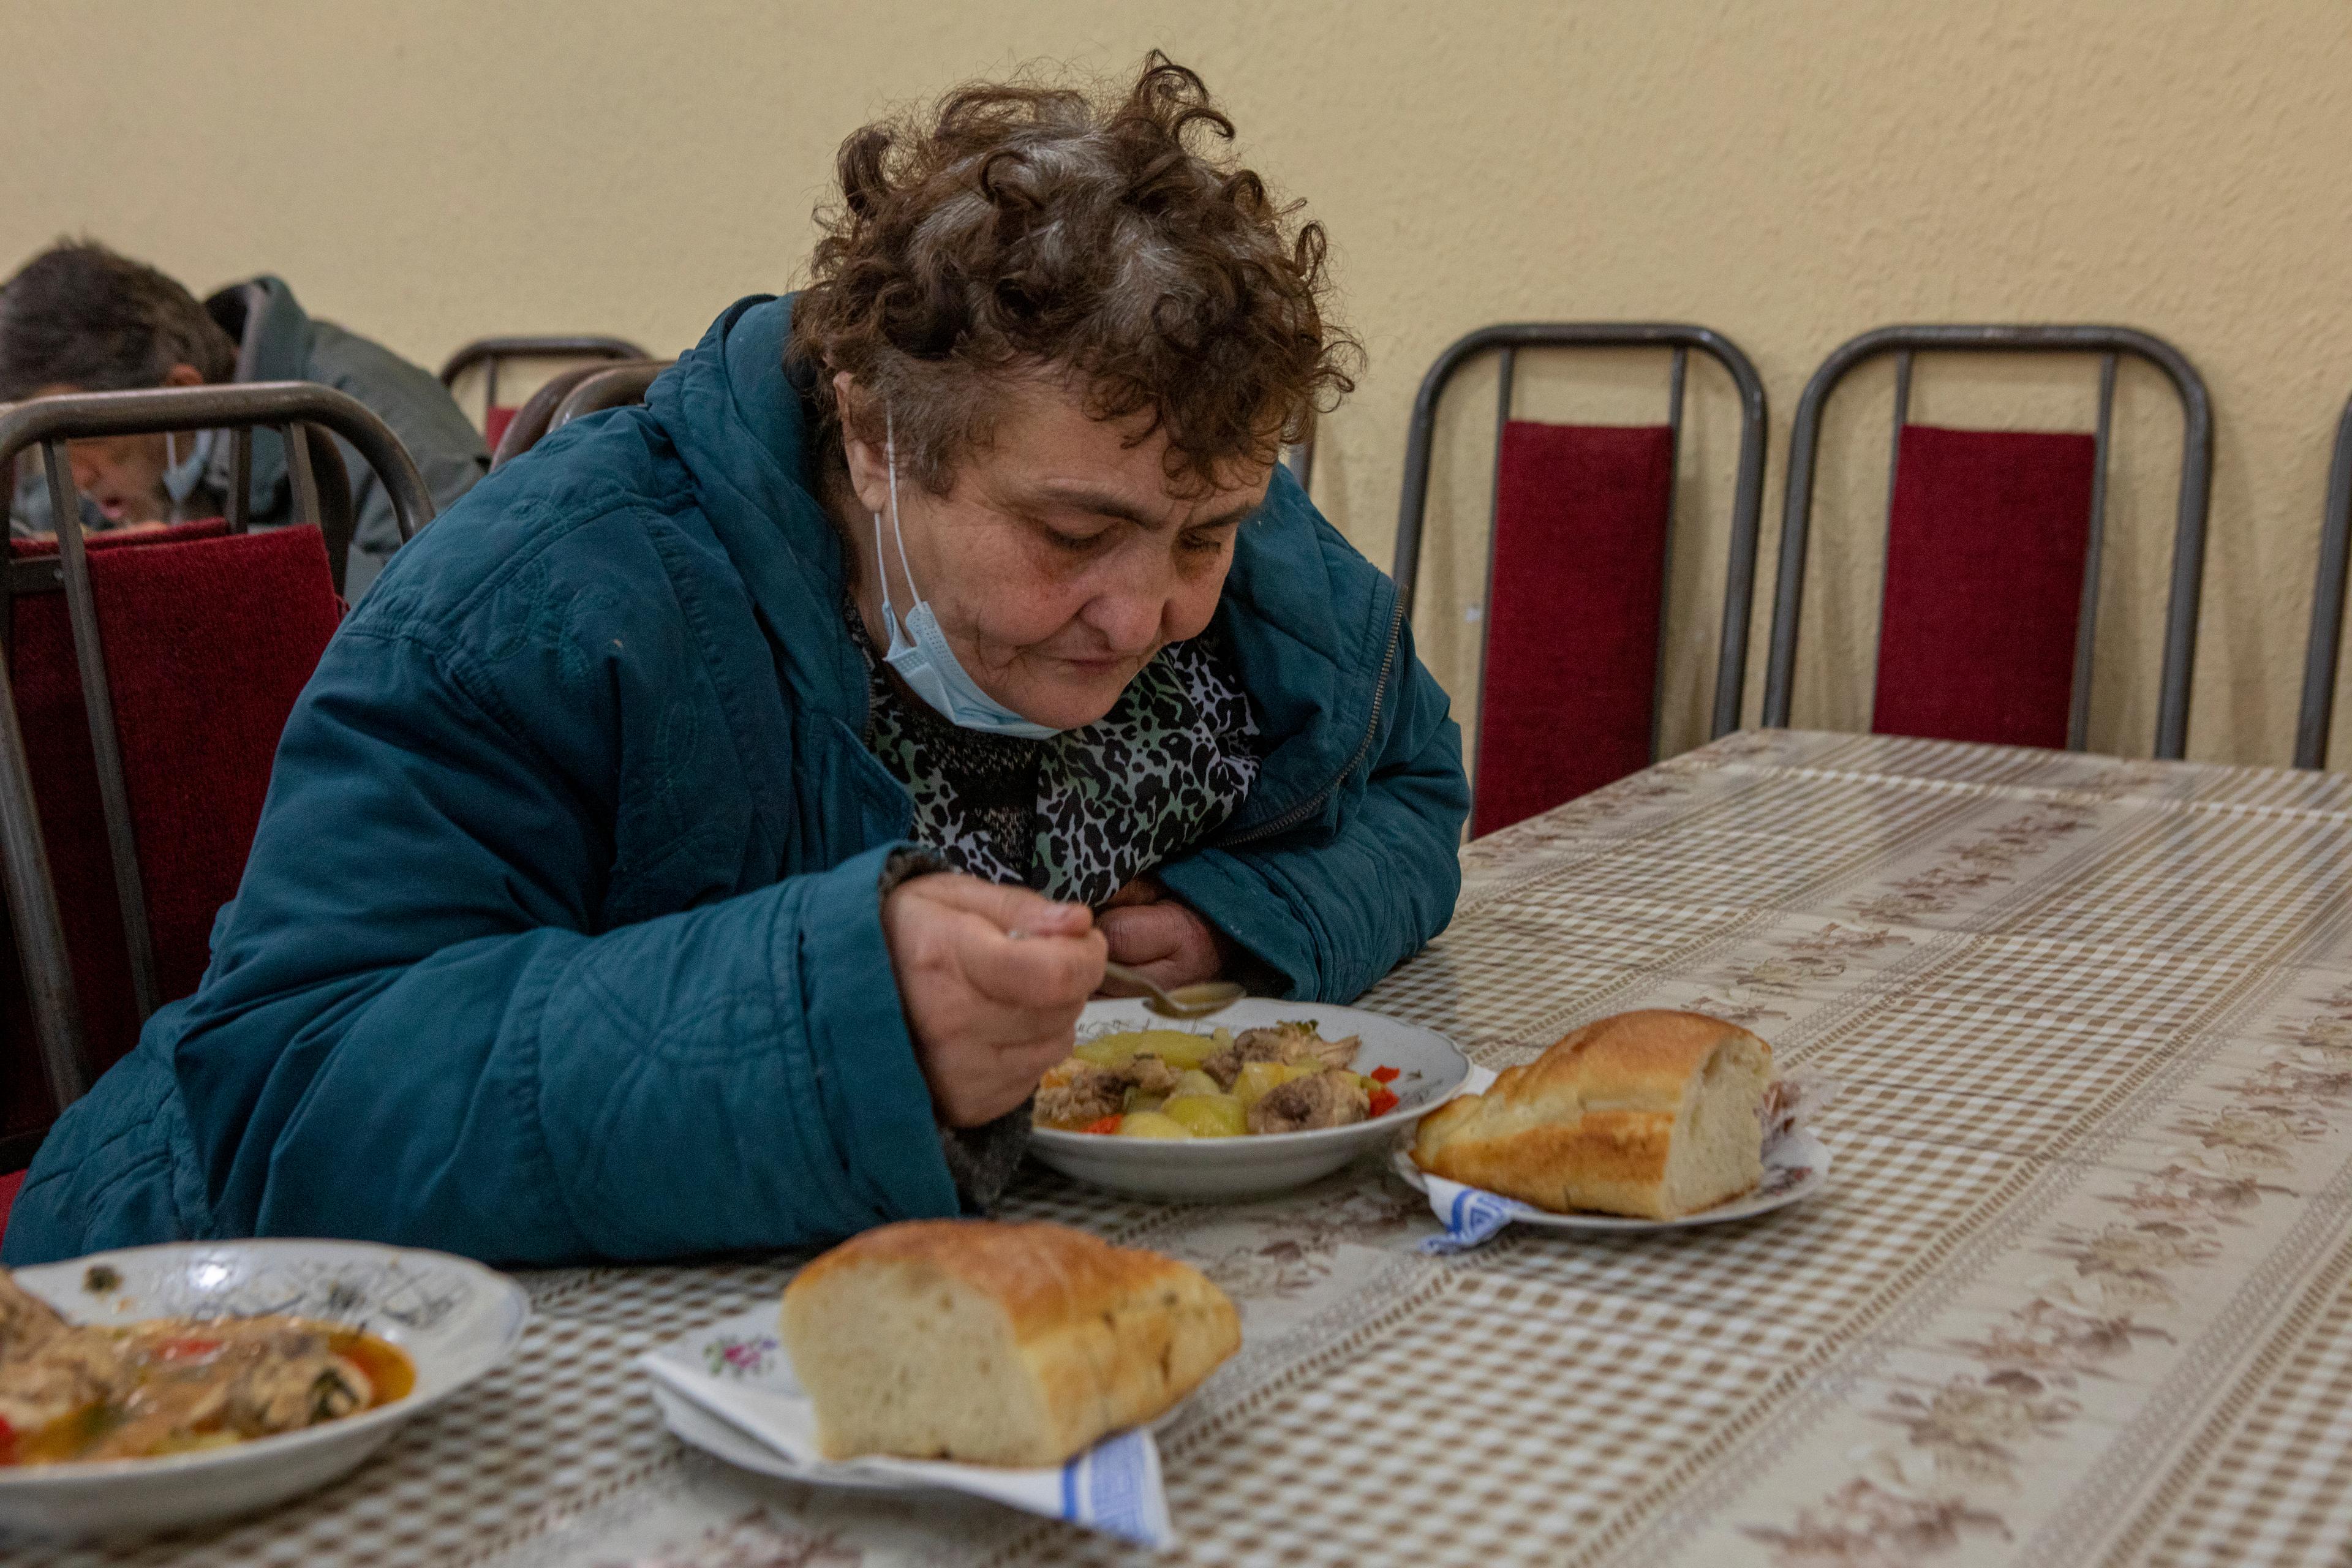 La femme est assise à une table en train de manger un repas de soupe populaire.